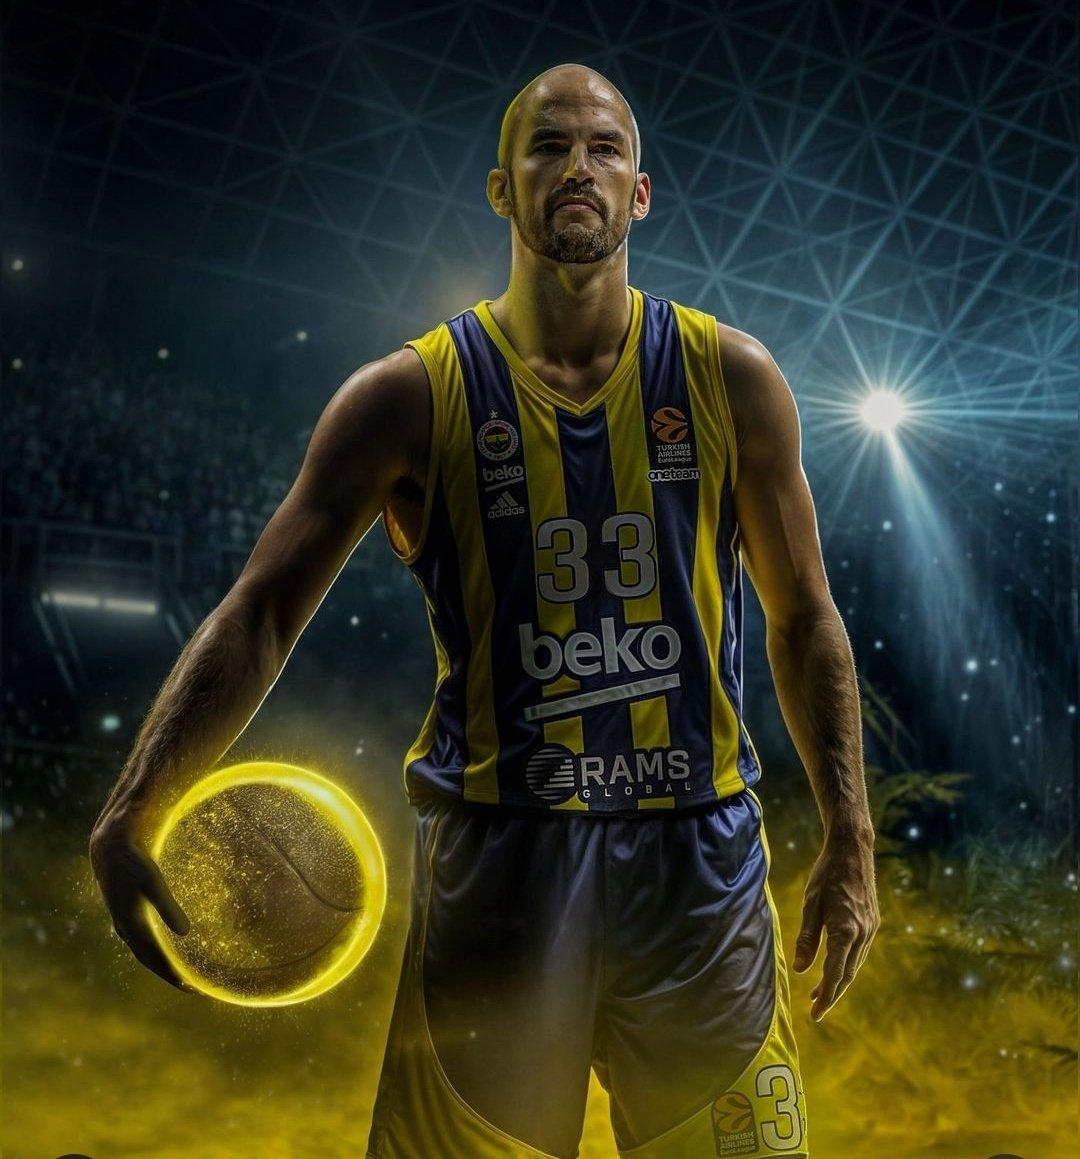 Fenerbahçe Spor Kulübü GURURLA Sunar 🔥 Büyük Oynadı Fenerbahçe Beko 'yu Berlin 'e götürdü Nick Calathes 🧿 #Euroleague #YellowLegacy Final 4